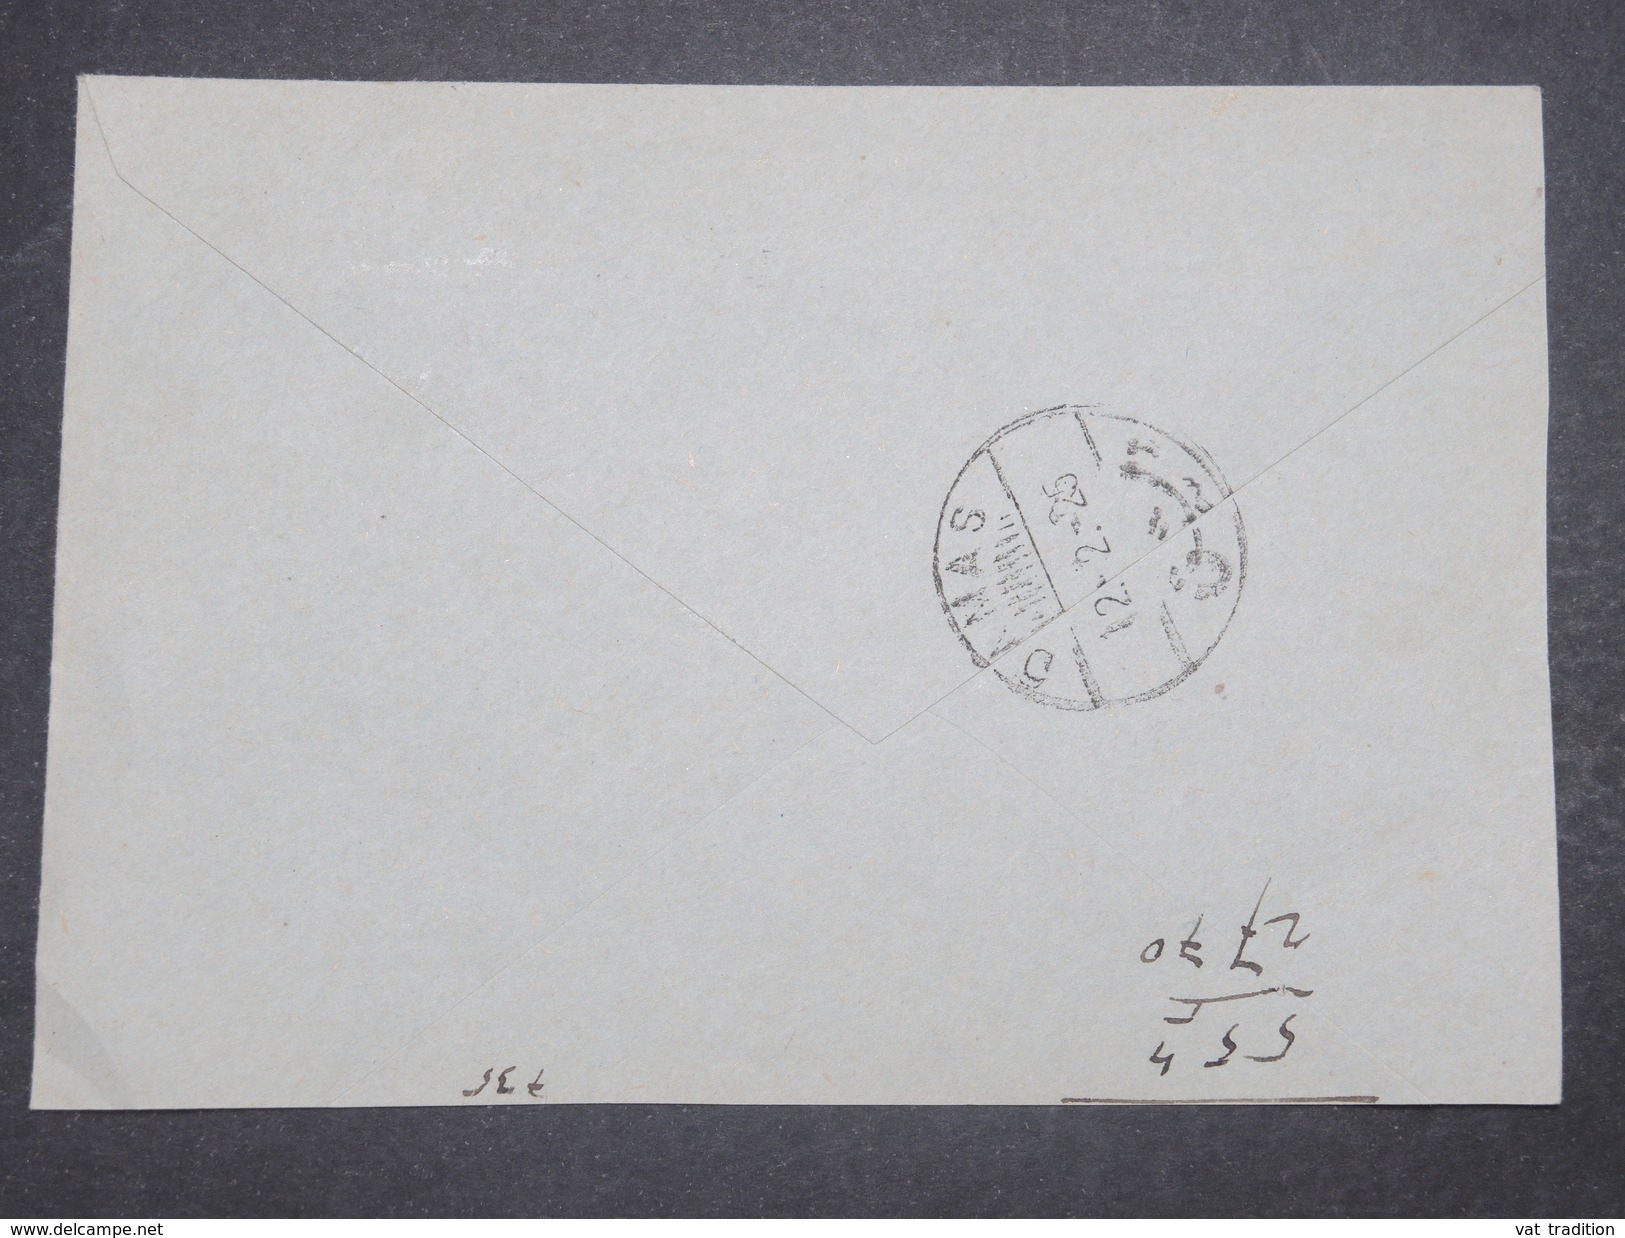 FRANCE / GRAND LIBAN - Enveloppe Commerciale De Beyrouth Pour Damas En 1925 , Affranchissement Merson Surchargé - L 9730 - Briefe U. Dokumente